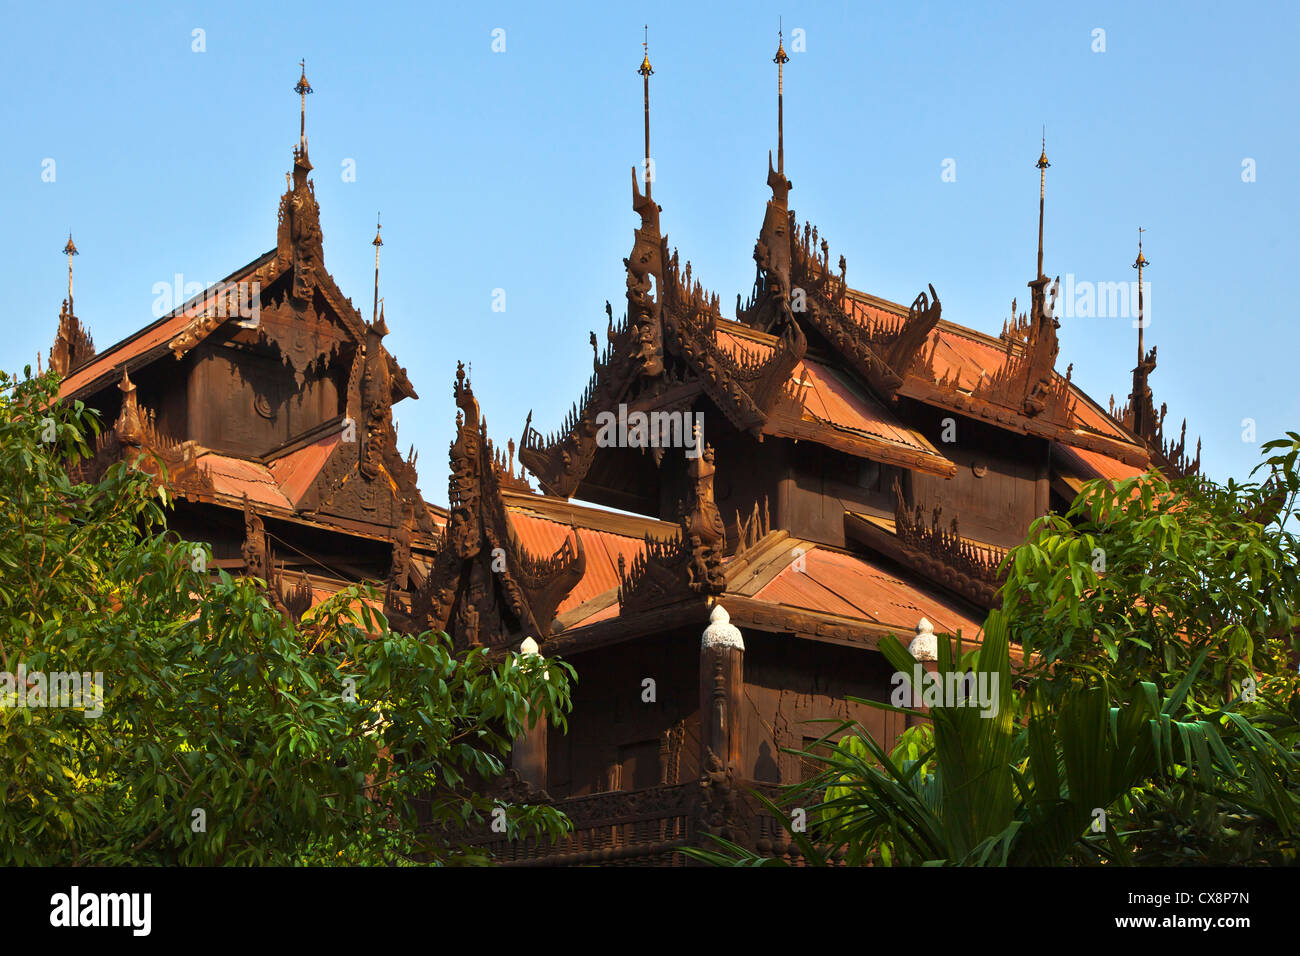 Le SHWE DANS BIN KYAUNG connu comme le monastère en teck a été construit en 1895 - MANDALAY, MYANMAR Banque D'Images